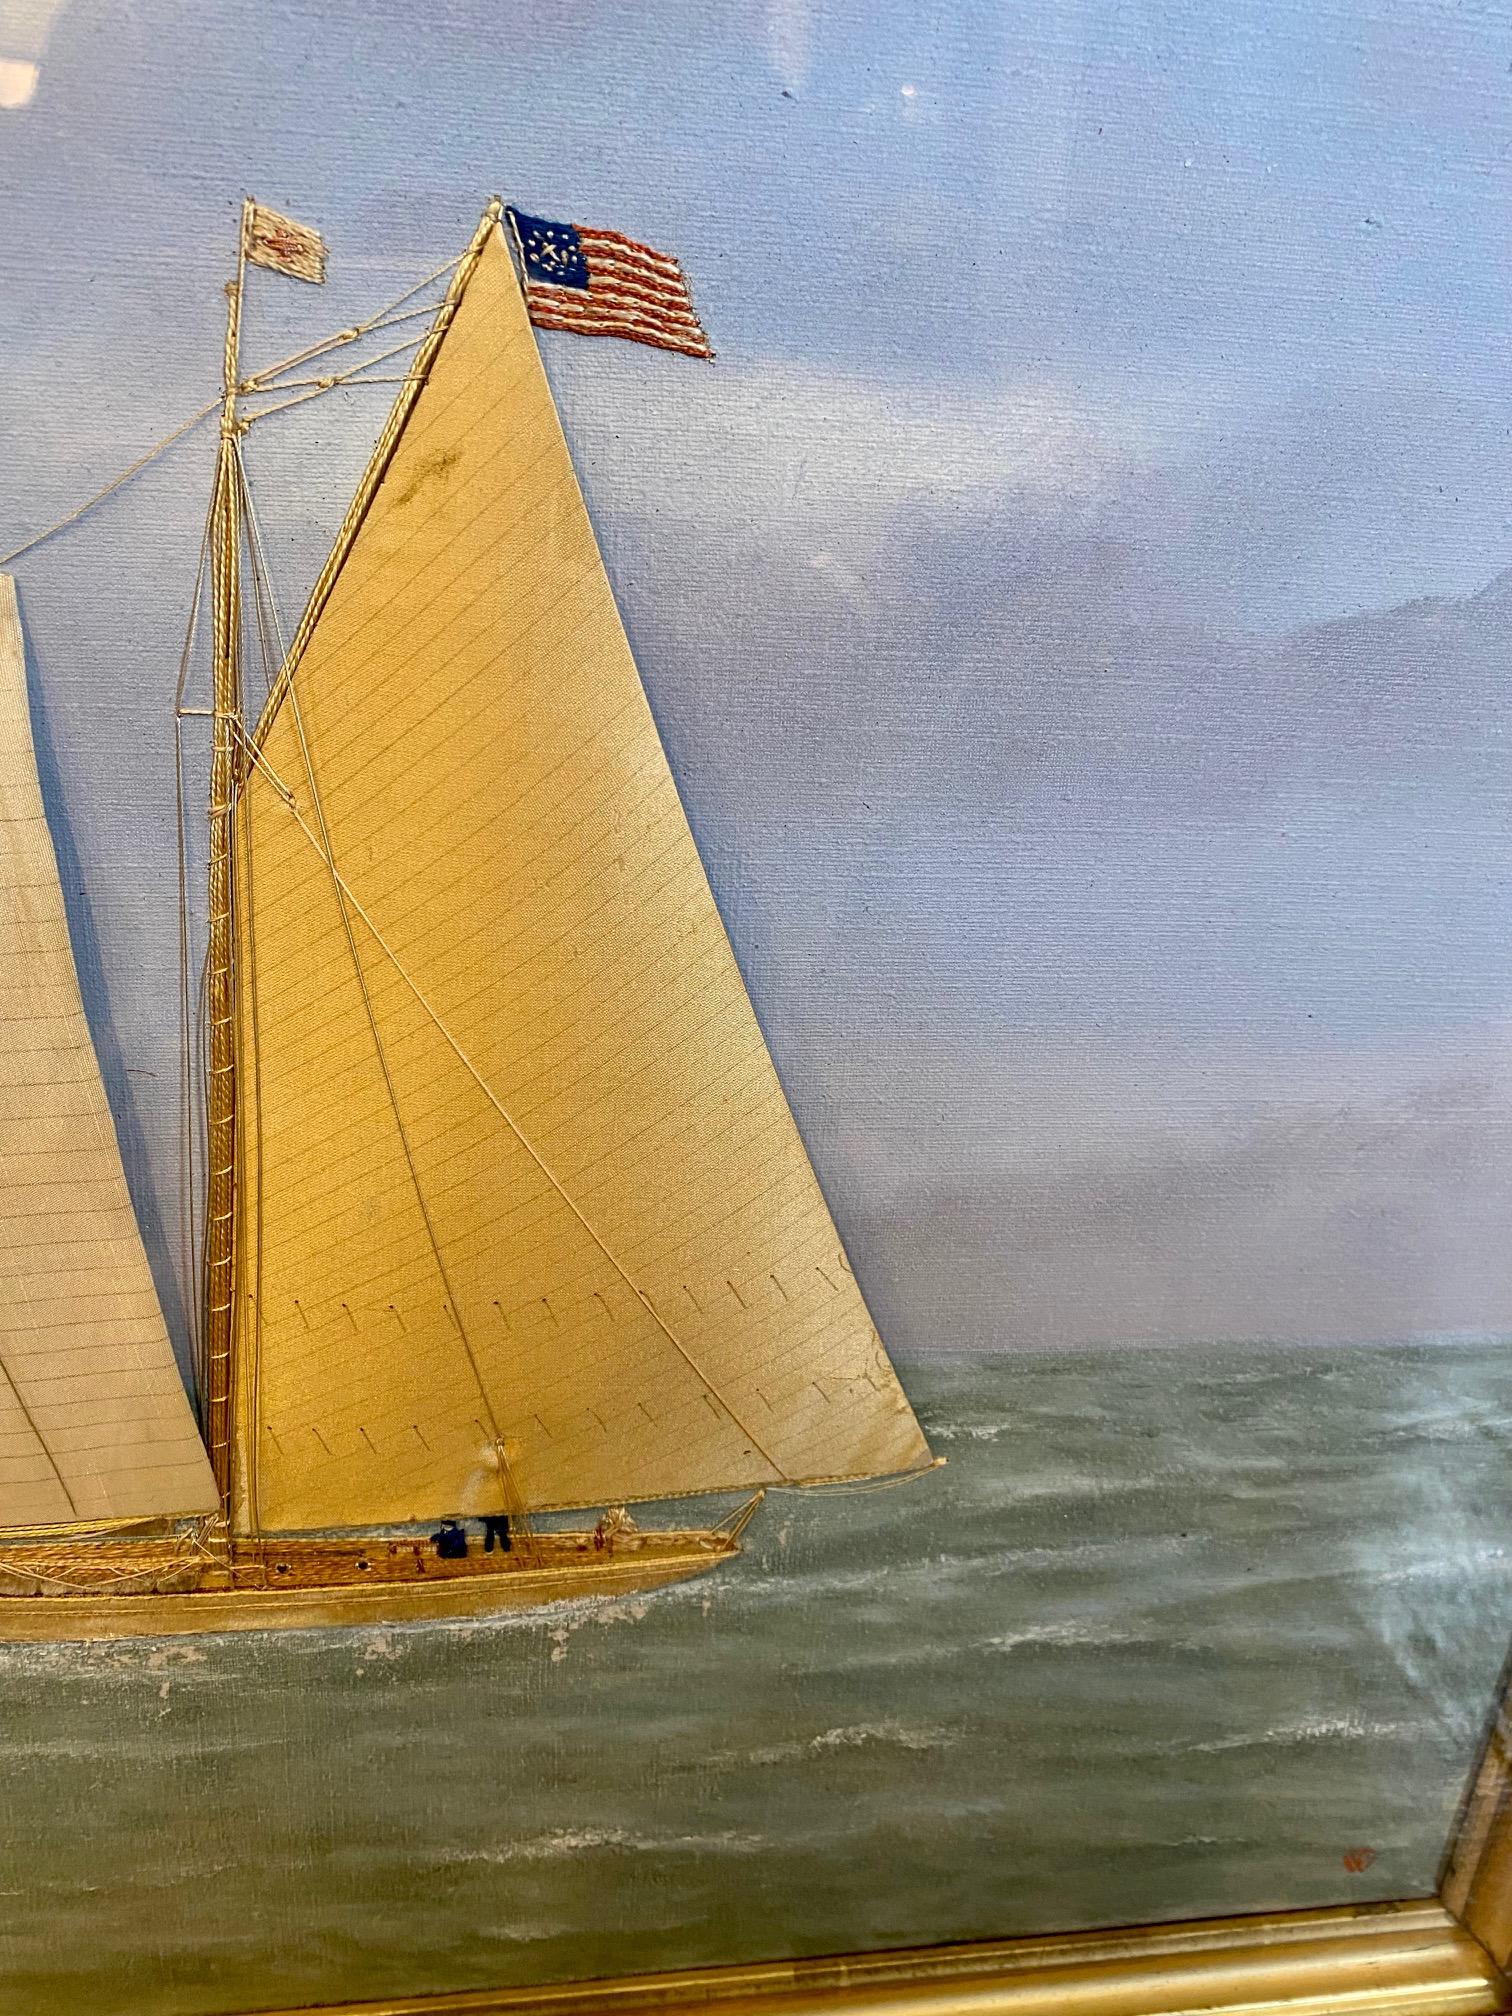 Seidengesticktes und handgemaltes Ölgemälde auf Leinwand von Thomas Willis (1850 - 1925) aus dem 19. Jahrhundert, das eine Rennyacht mit Schonertakelung zeigt, die eng an der Steuerbordseite liegt und die amerikanische Flagge und die Fahne des New